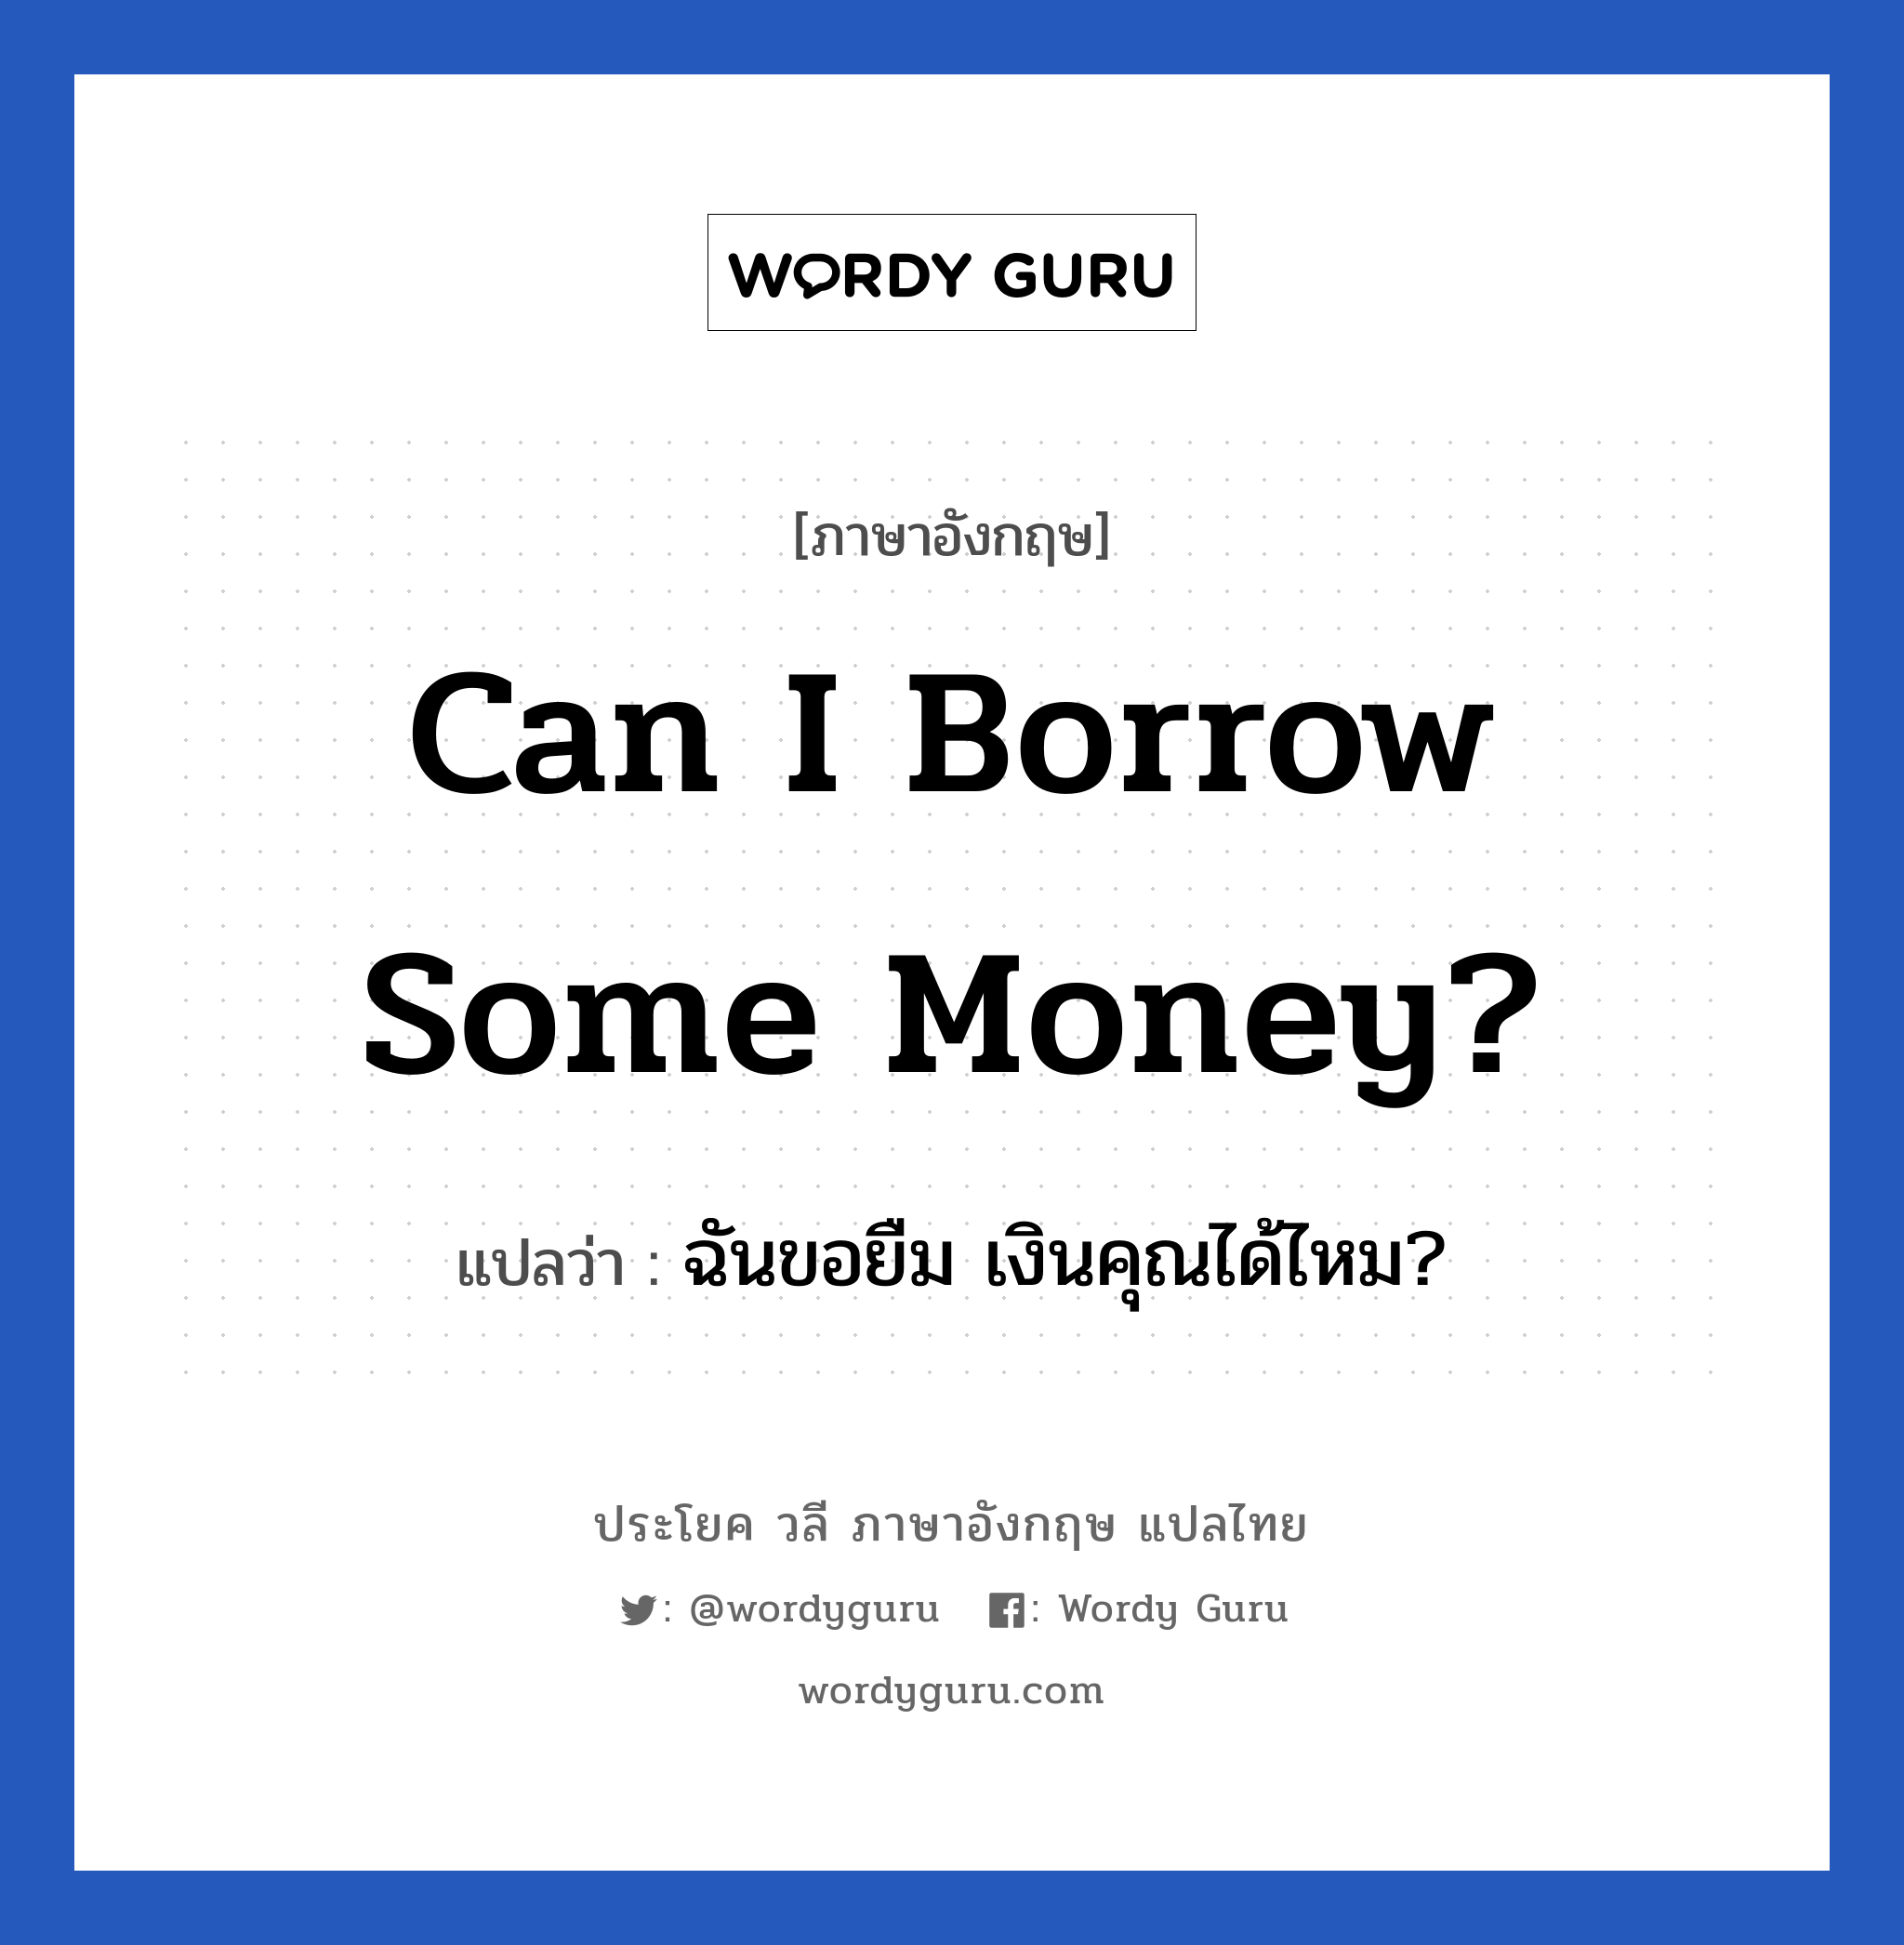 Can I borrow some money? แปลว่า?, วลีภาษาอังกฤษ Can I borrow some money? แปลว่า ฉันขอยืม เงินคุณได้ไหม?